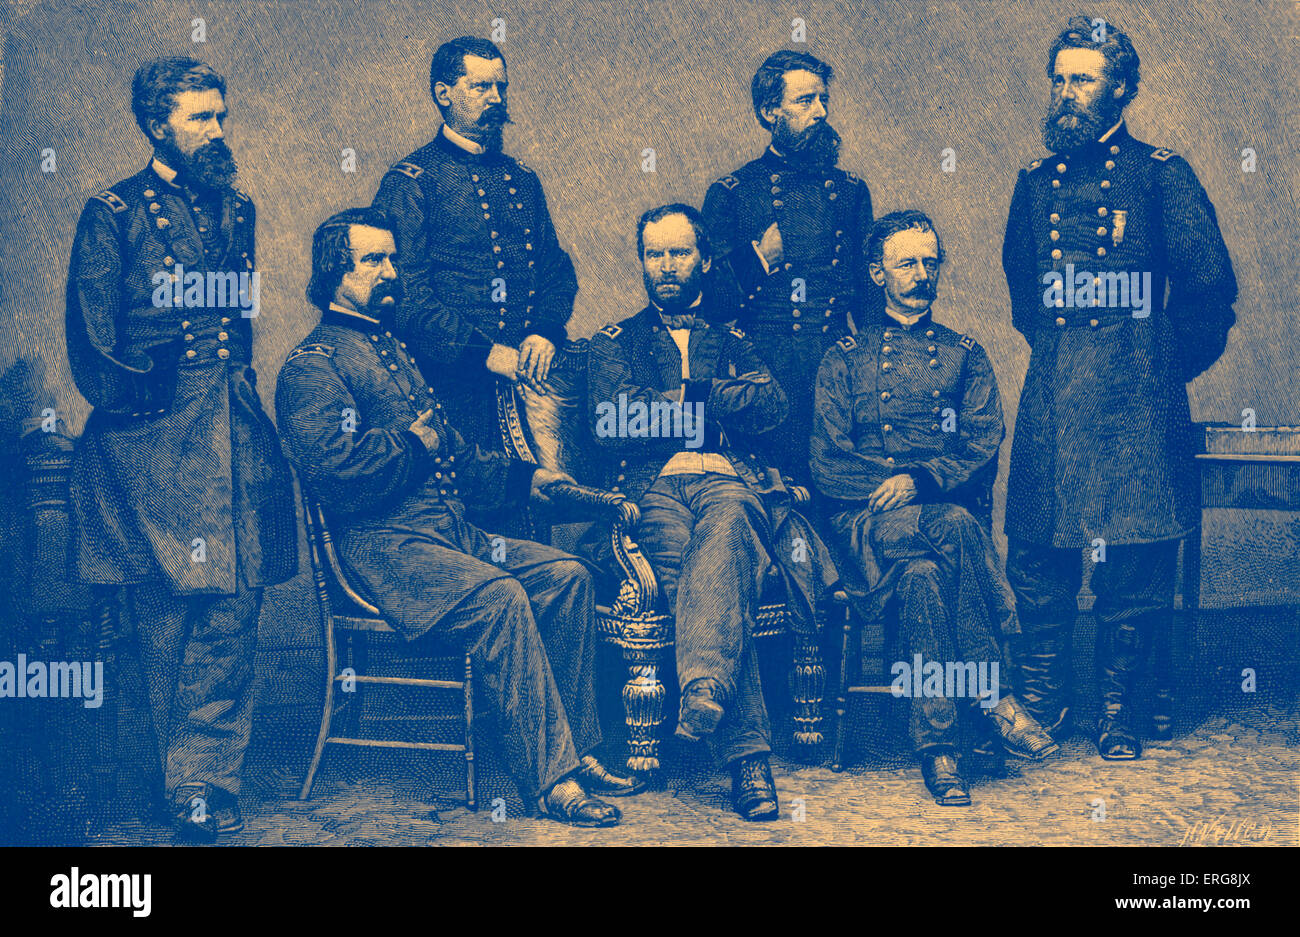 La guerre civile américaine - Les généraux de l'Union européenne. De gauche à droite : O.O. Howard, John Logan, W.M.B. Hazen, W.T.Sherman, Jeff C. Davis, Henry W. Banque D'Images